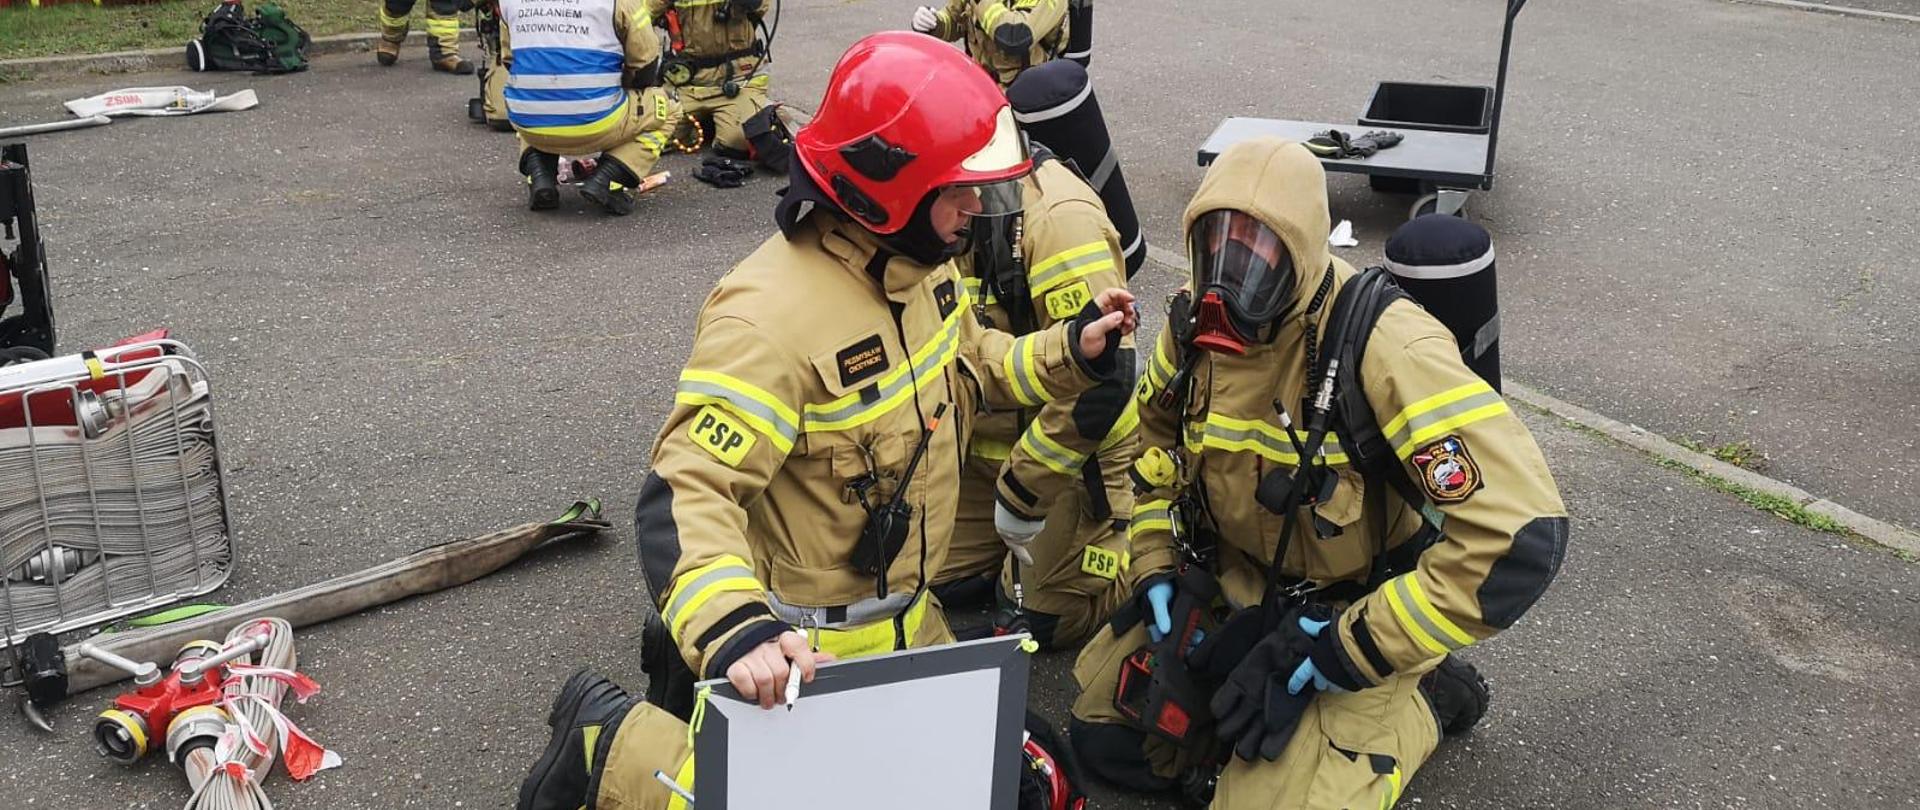 Na zdjęciu widnieją strażacy podczas ćwiczeń w symulatorze gaszenia pożarów wewnętrznych